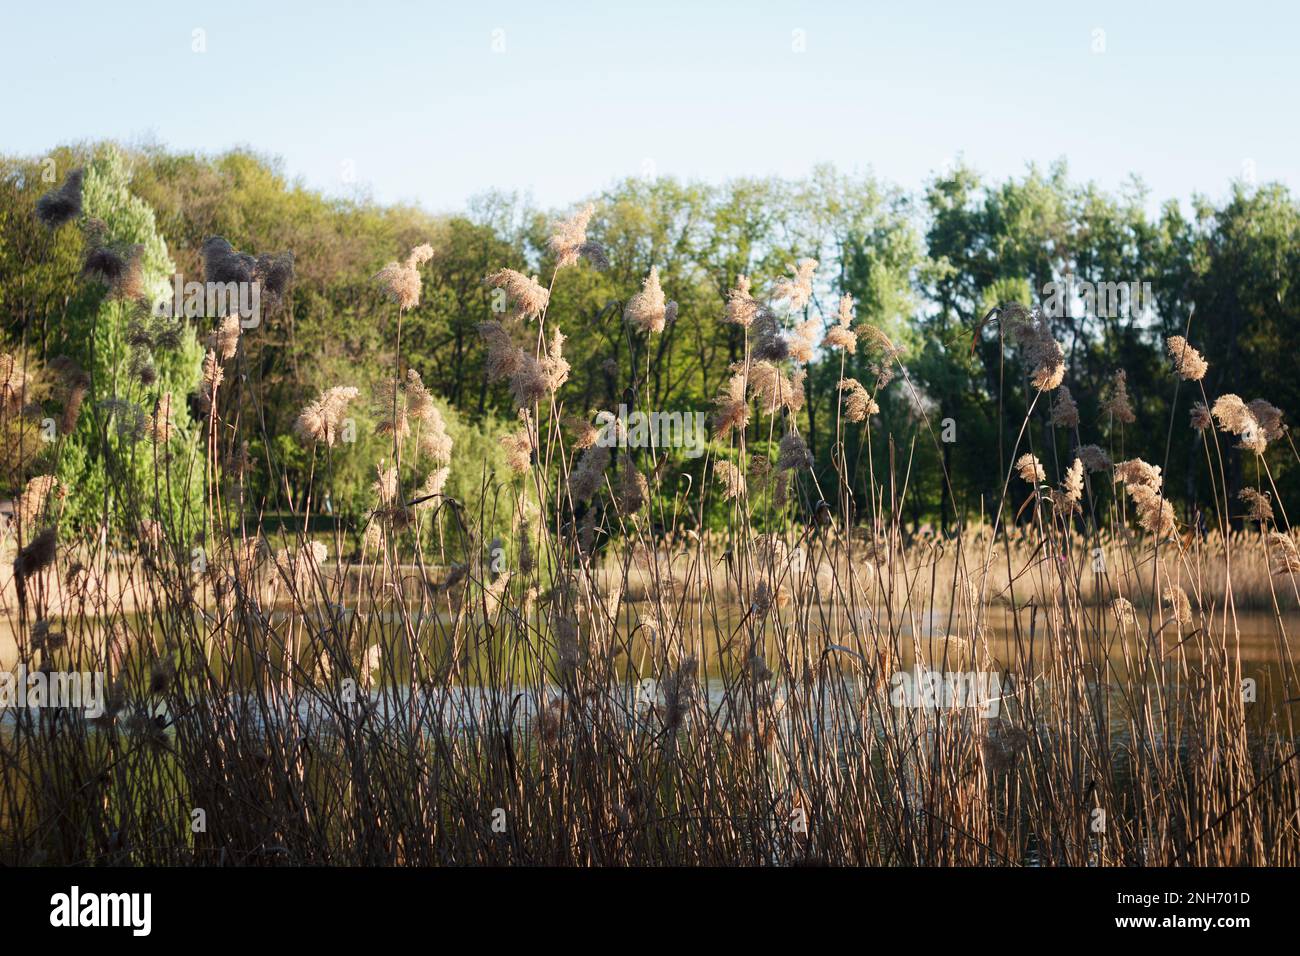 Orizzontale. Canna comune, Phragmites essiccato, si sviluppa alla luce del sole sulla riva di un lago in un parco primaverile, sullo sfondo di alberi verdi Foto Stock